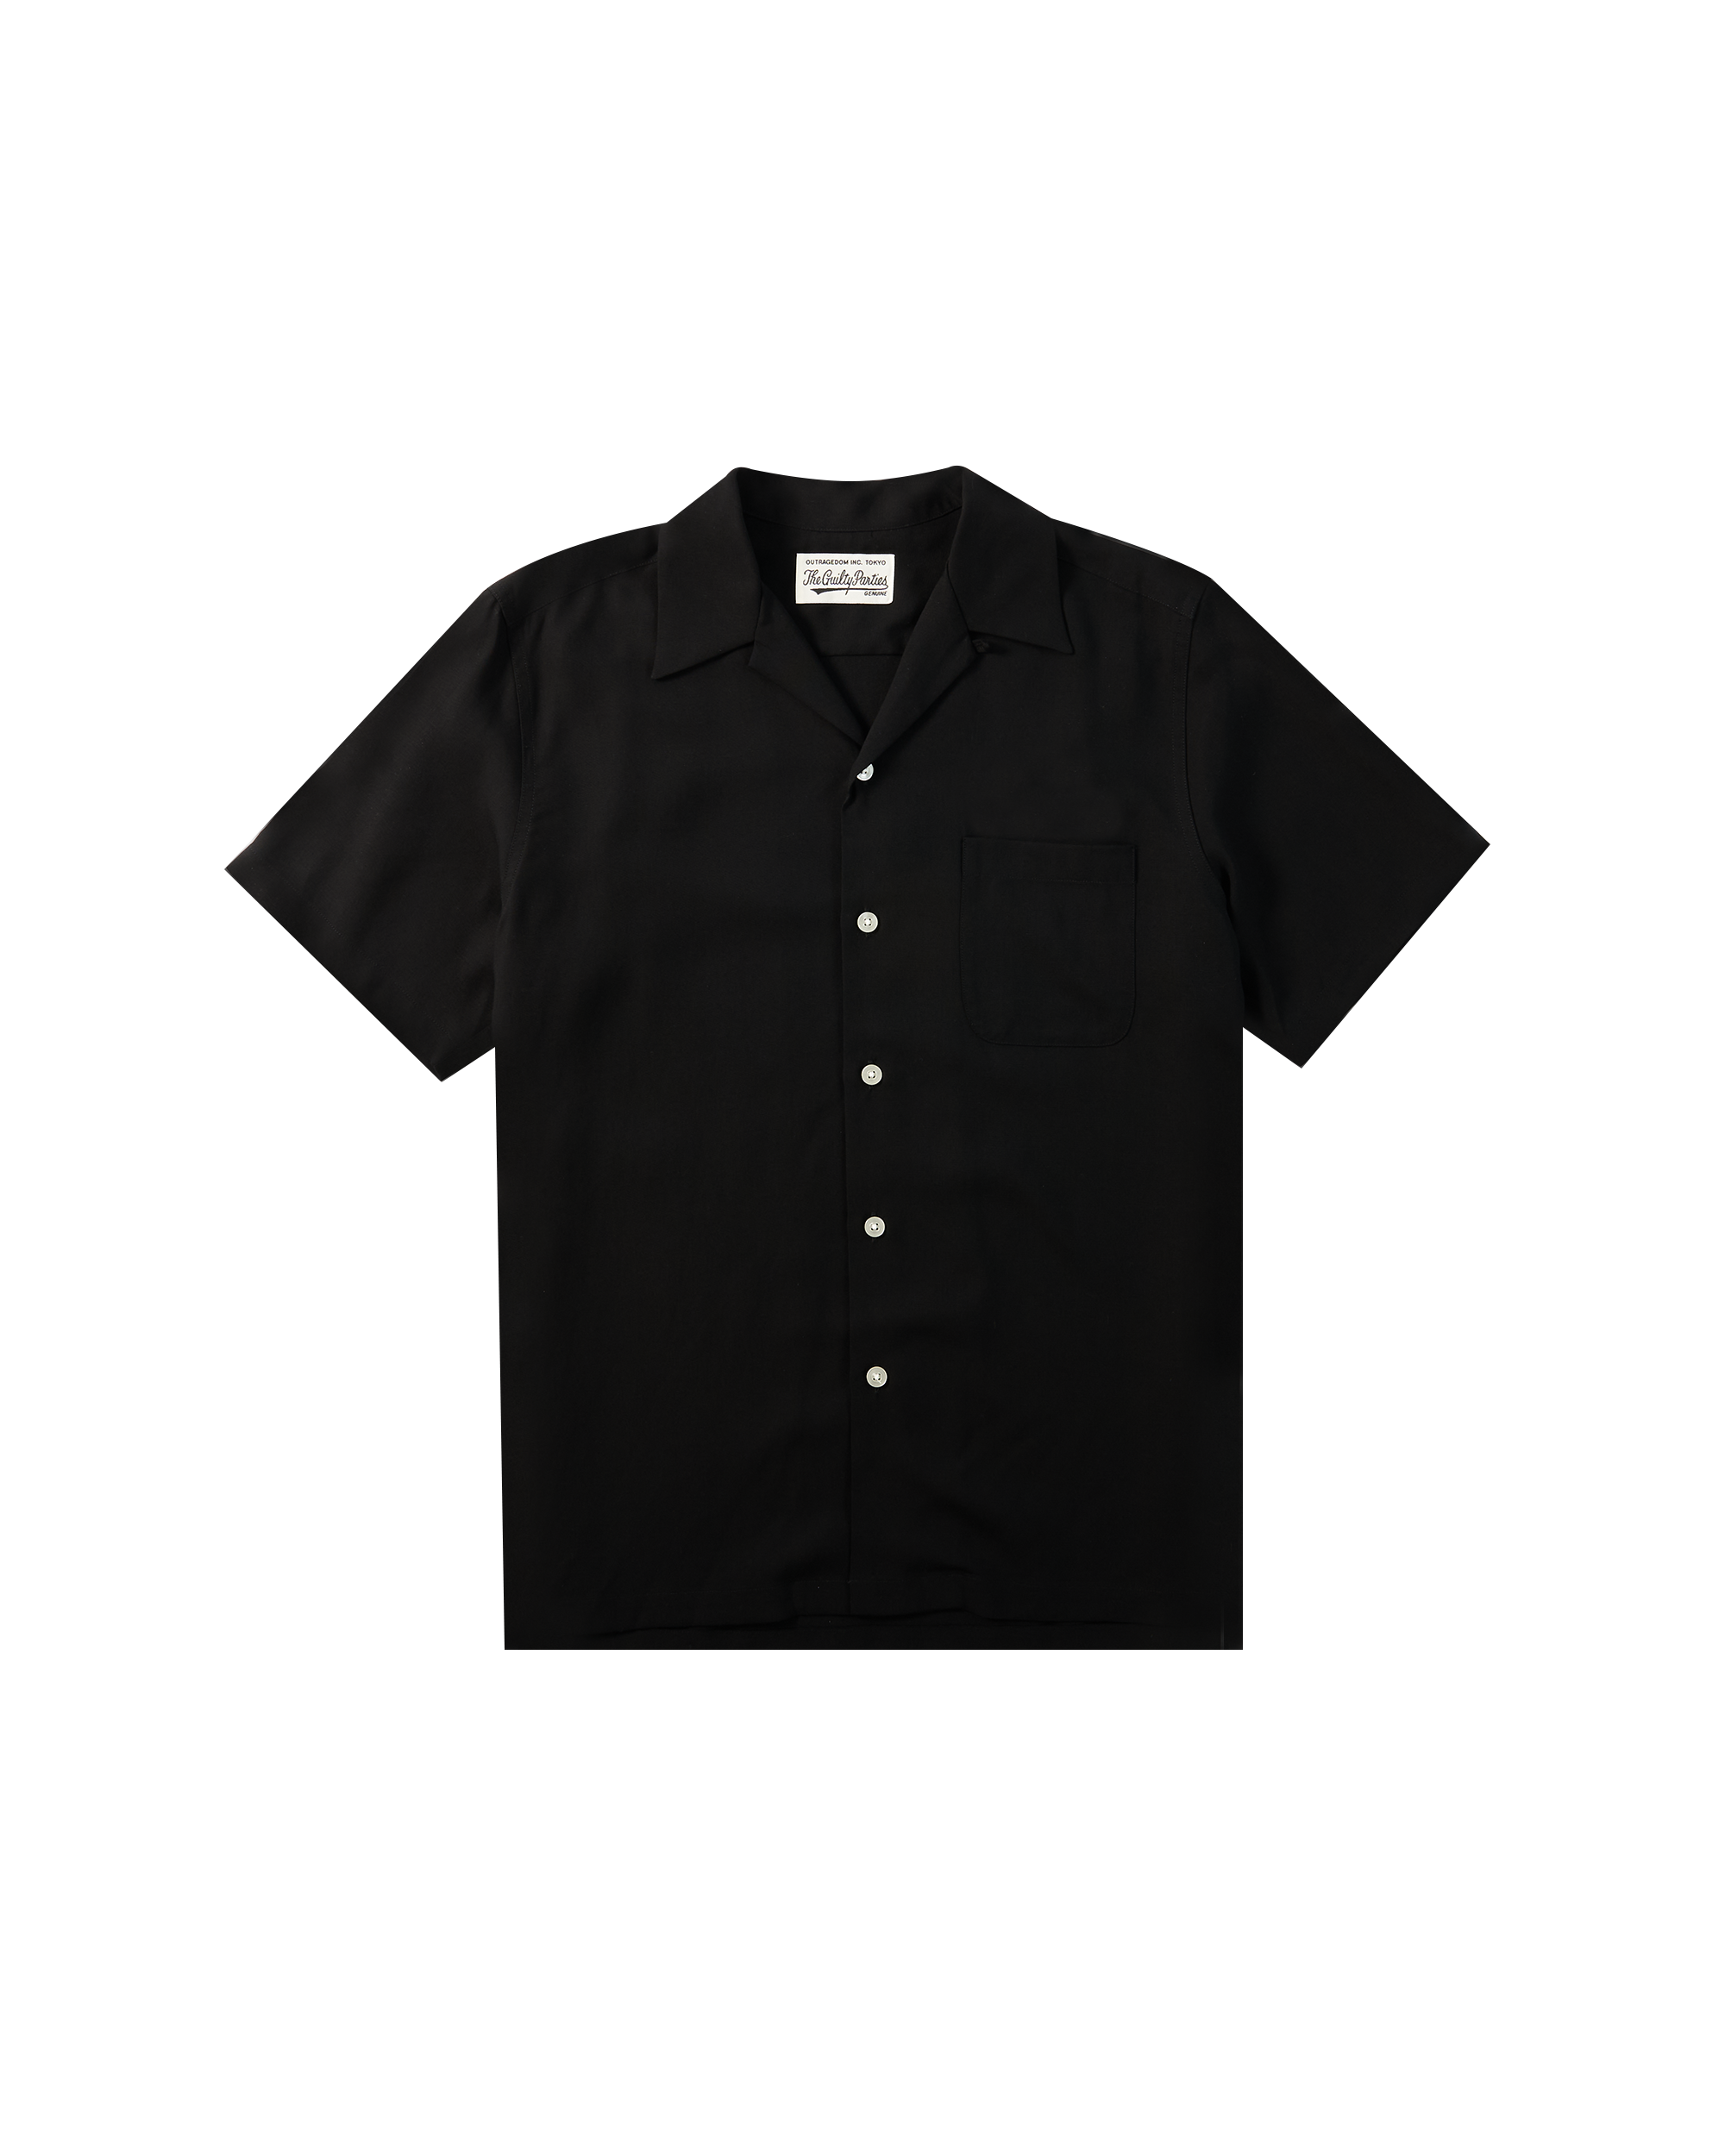 50'S Shirt S/S (Type-1) - Black